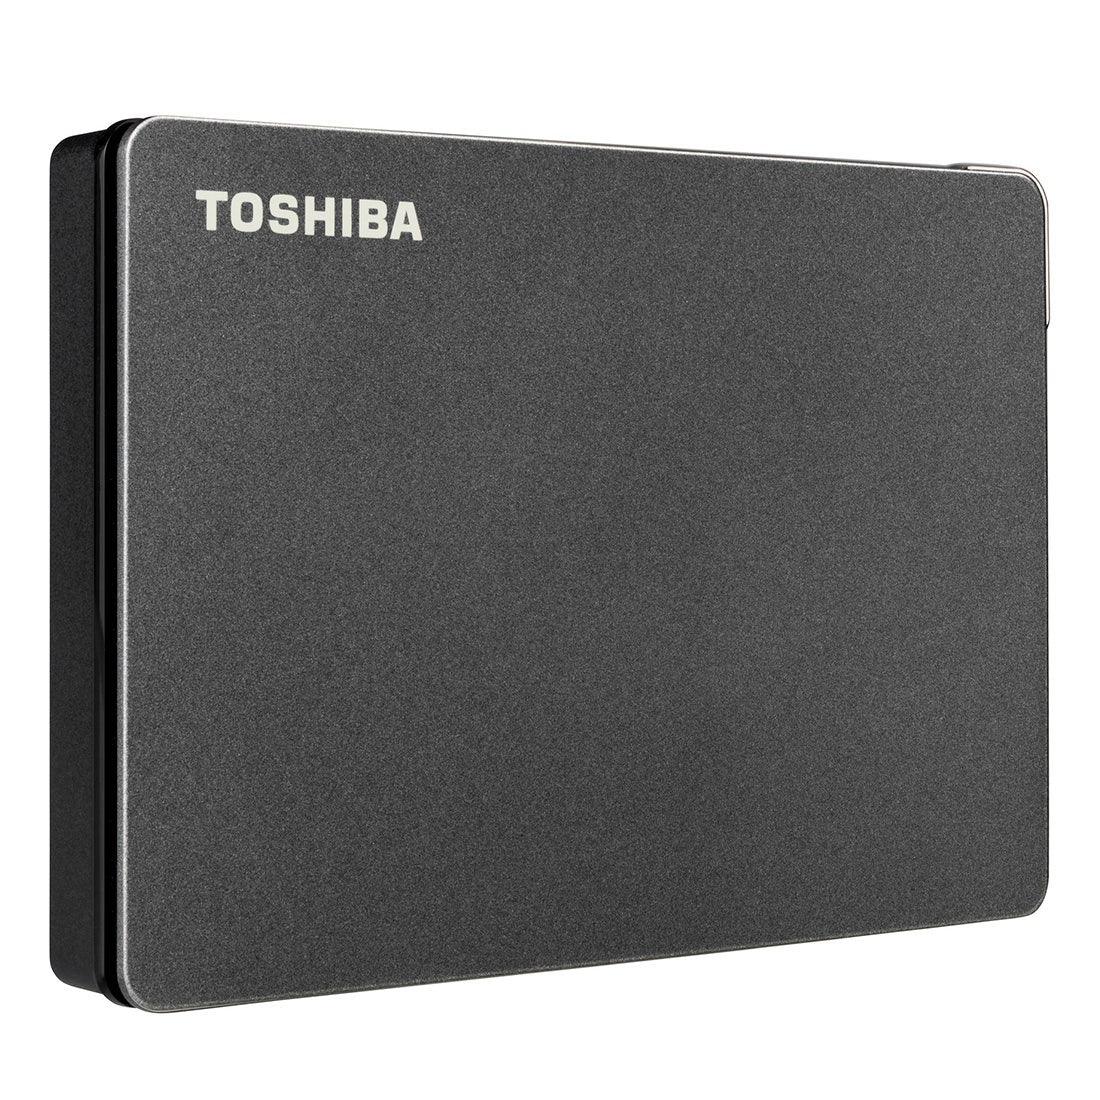 HD Externo Toshiba 1TB Canvio Gaming Preto - HDTX110XK3AA I - Mega Market